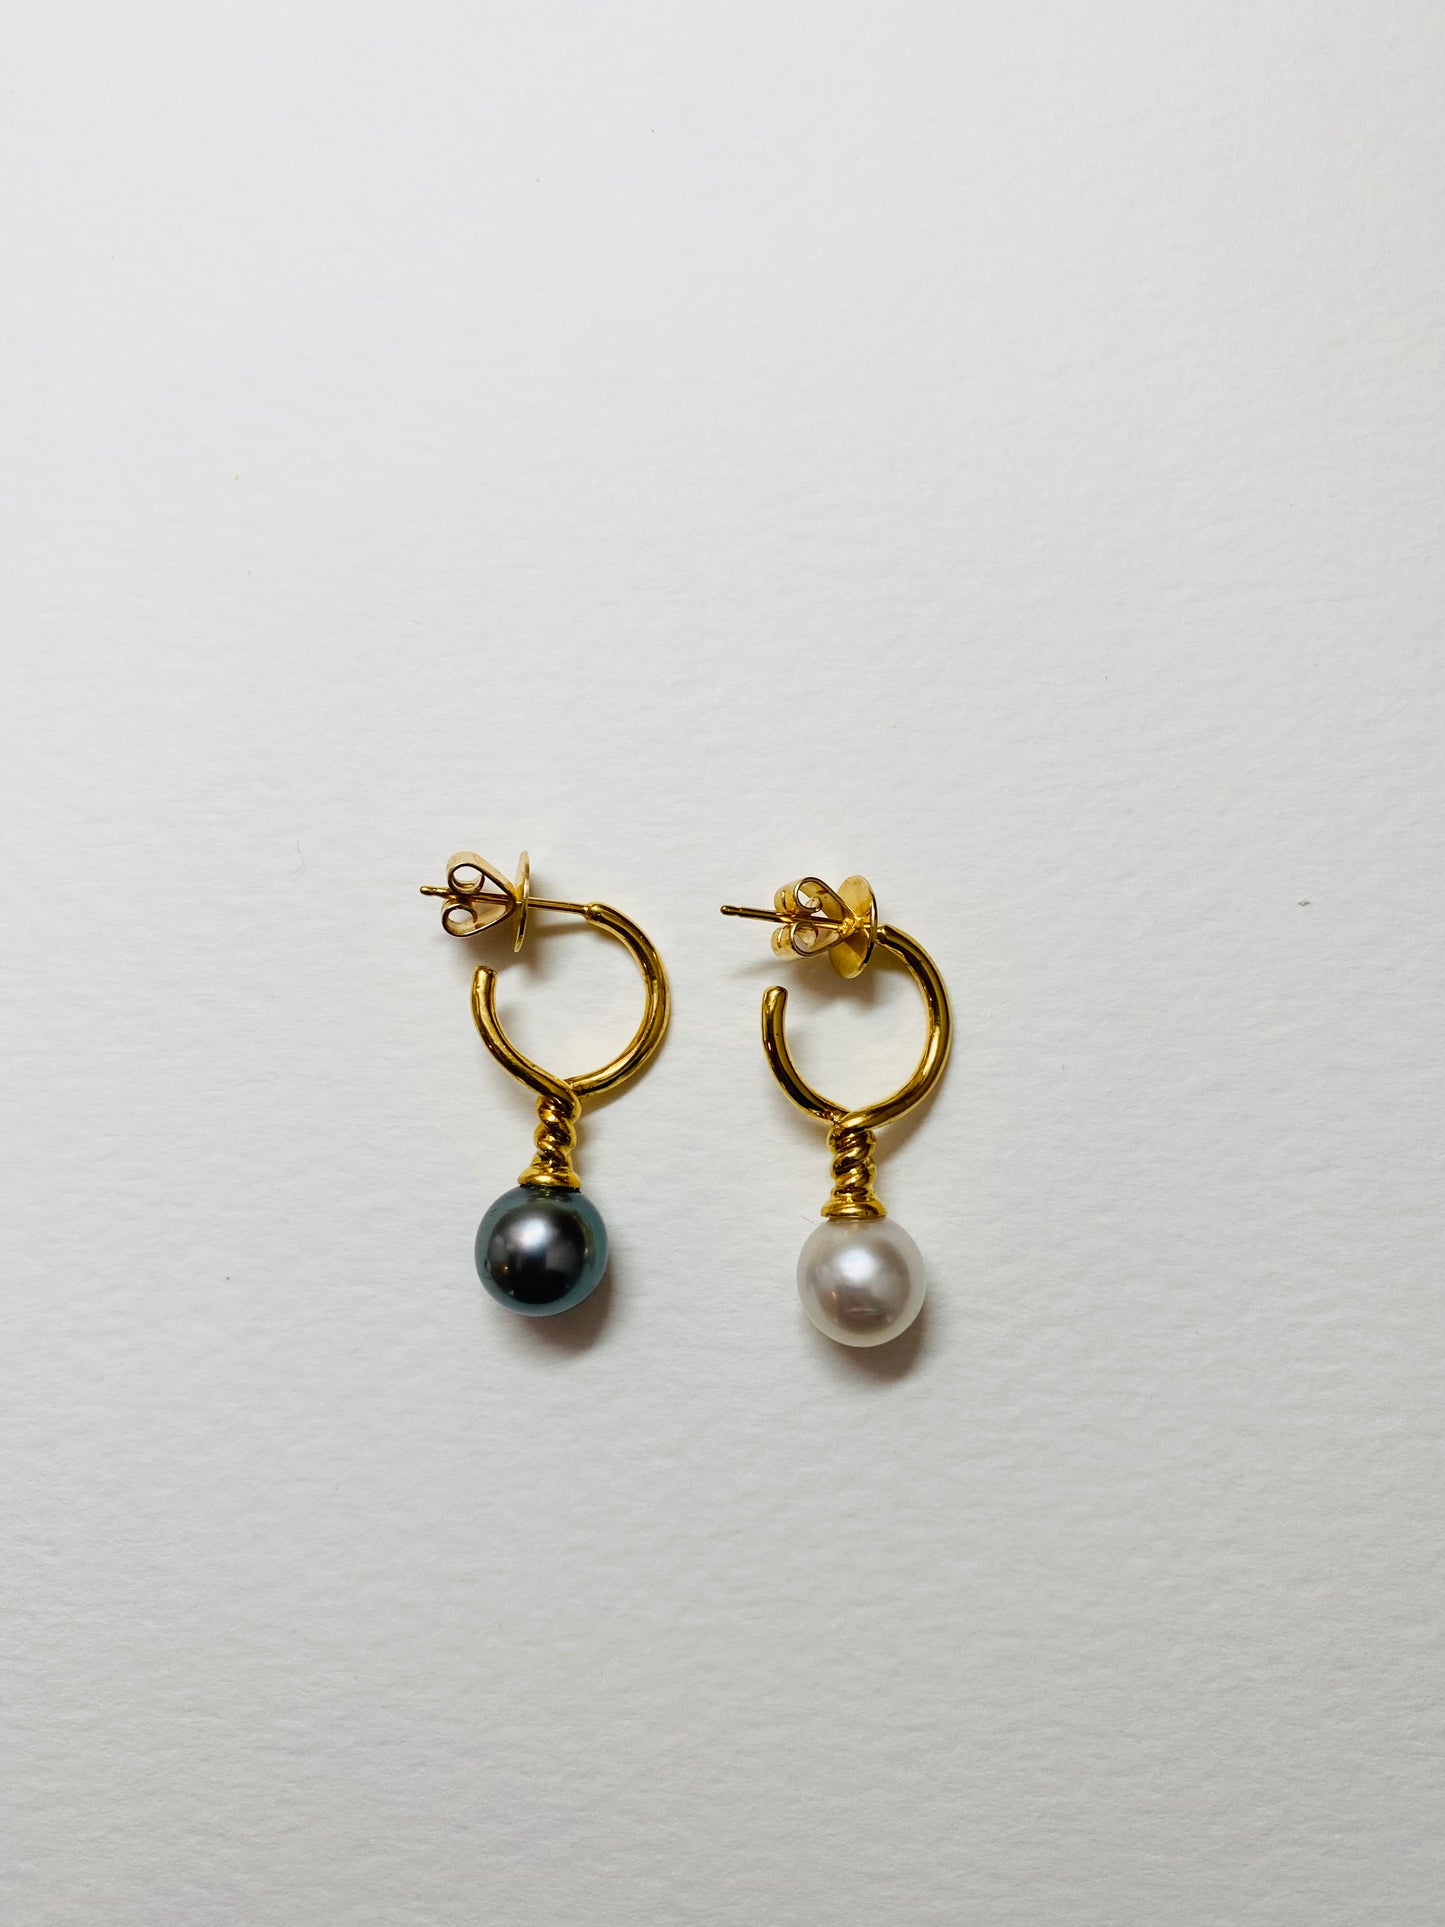 Black & White Gold Earrings